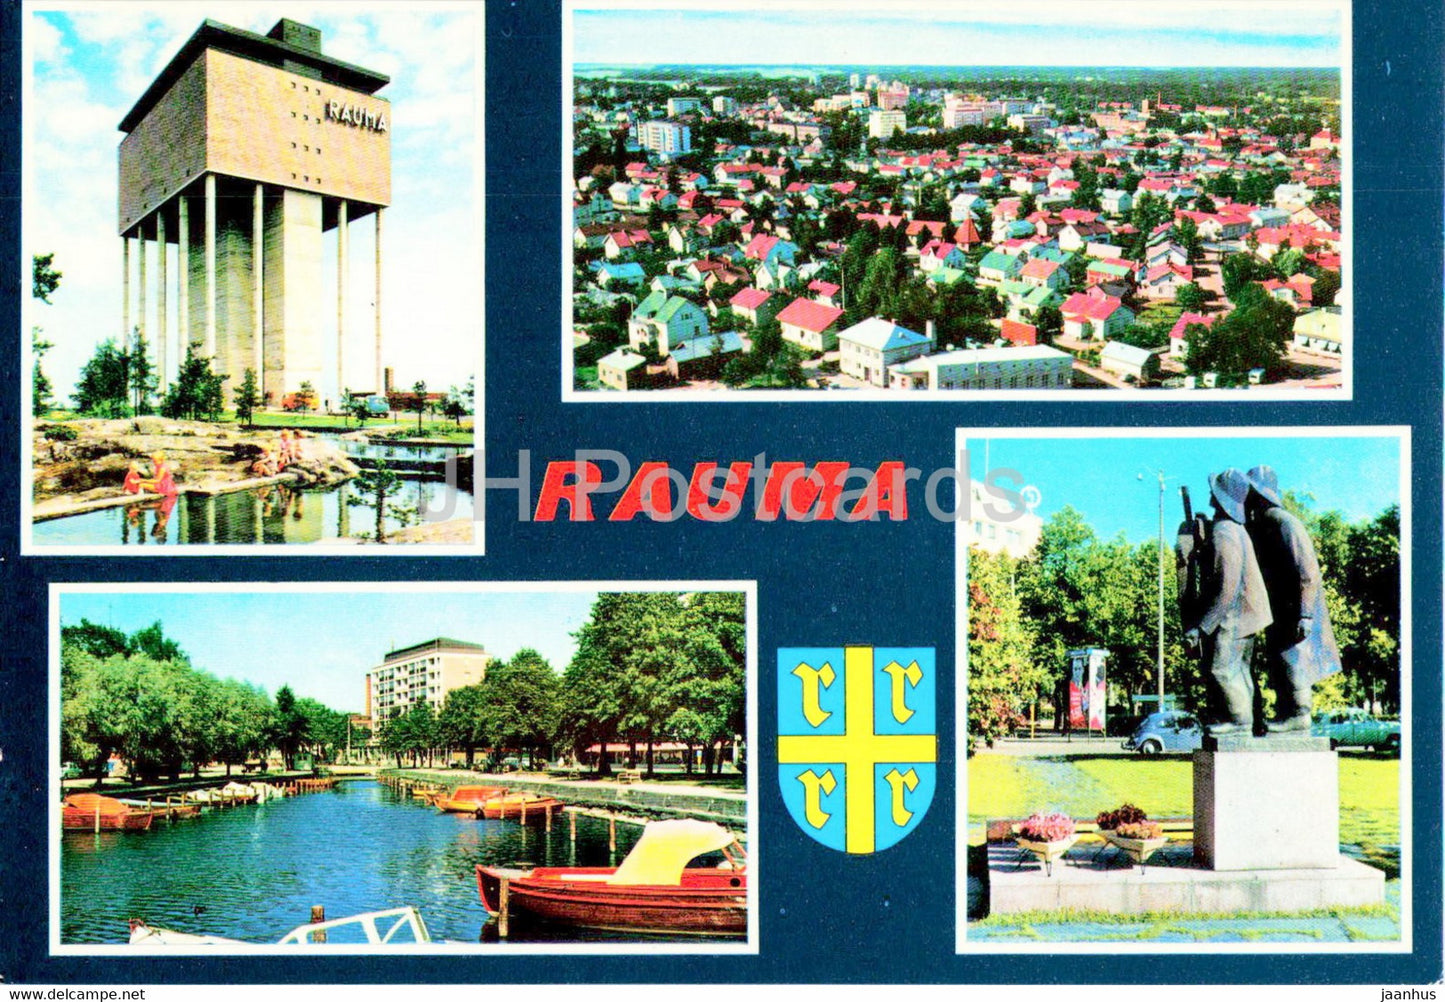 Rauma - town views - Finland - unused - JH Postcards